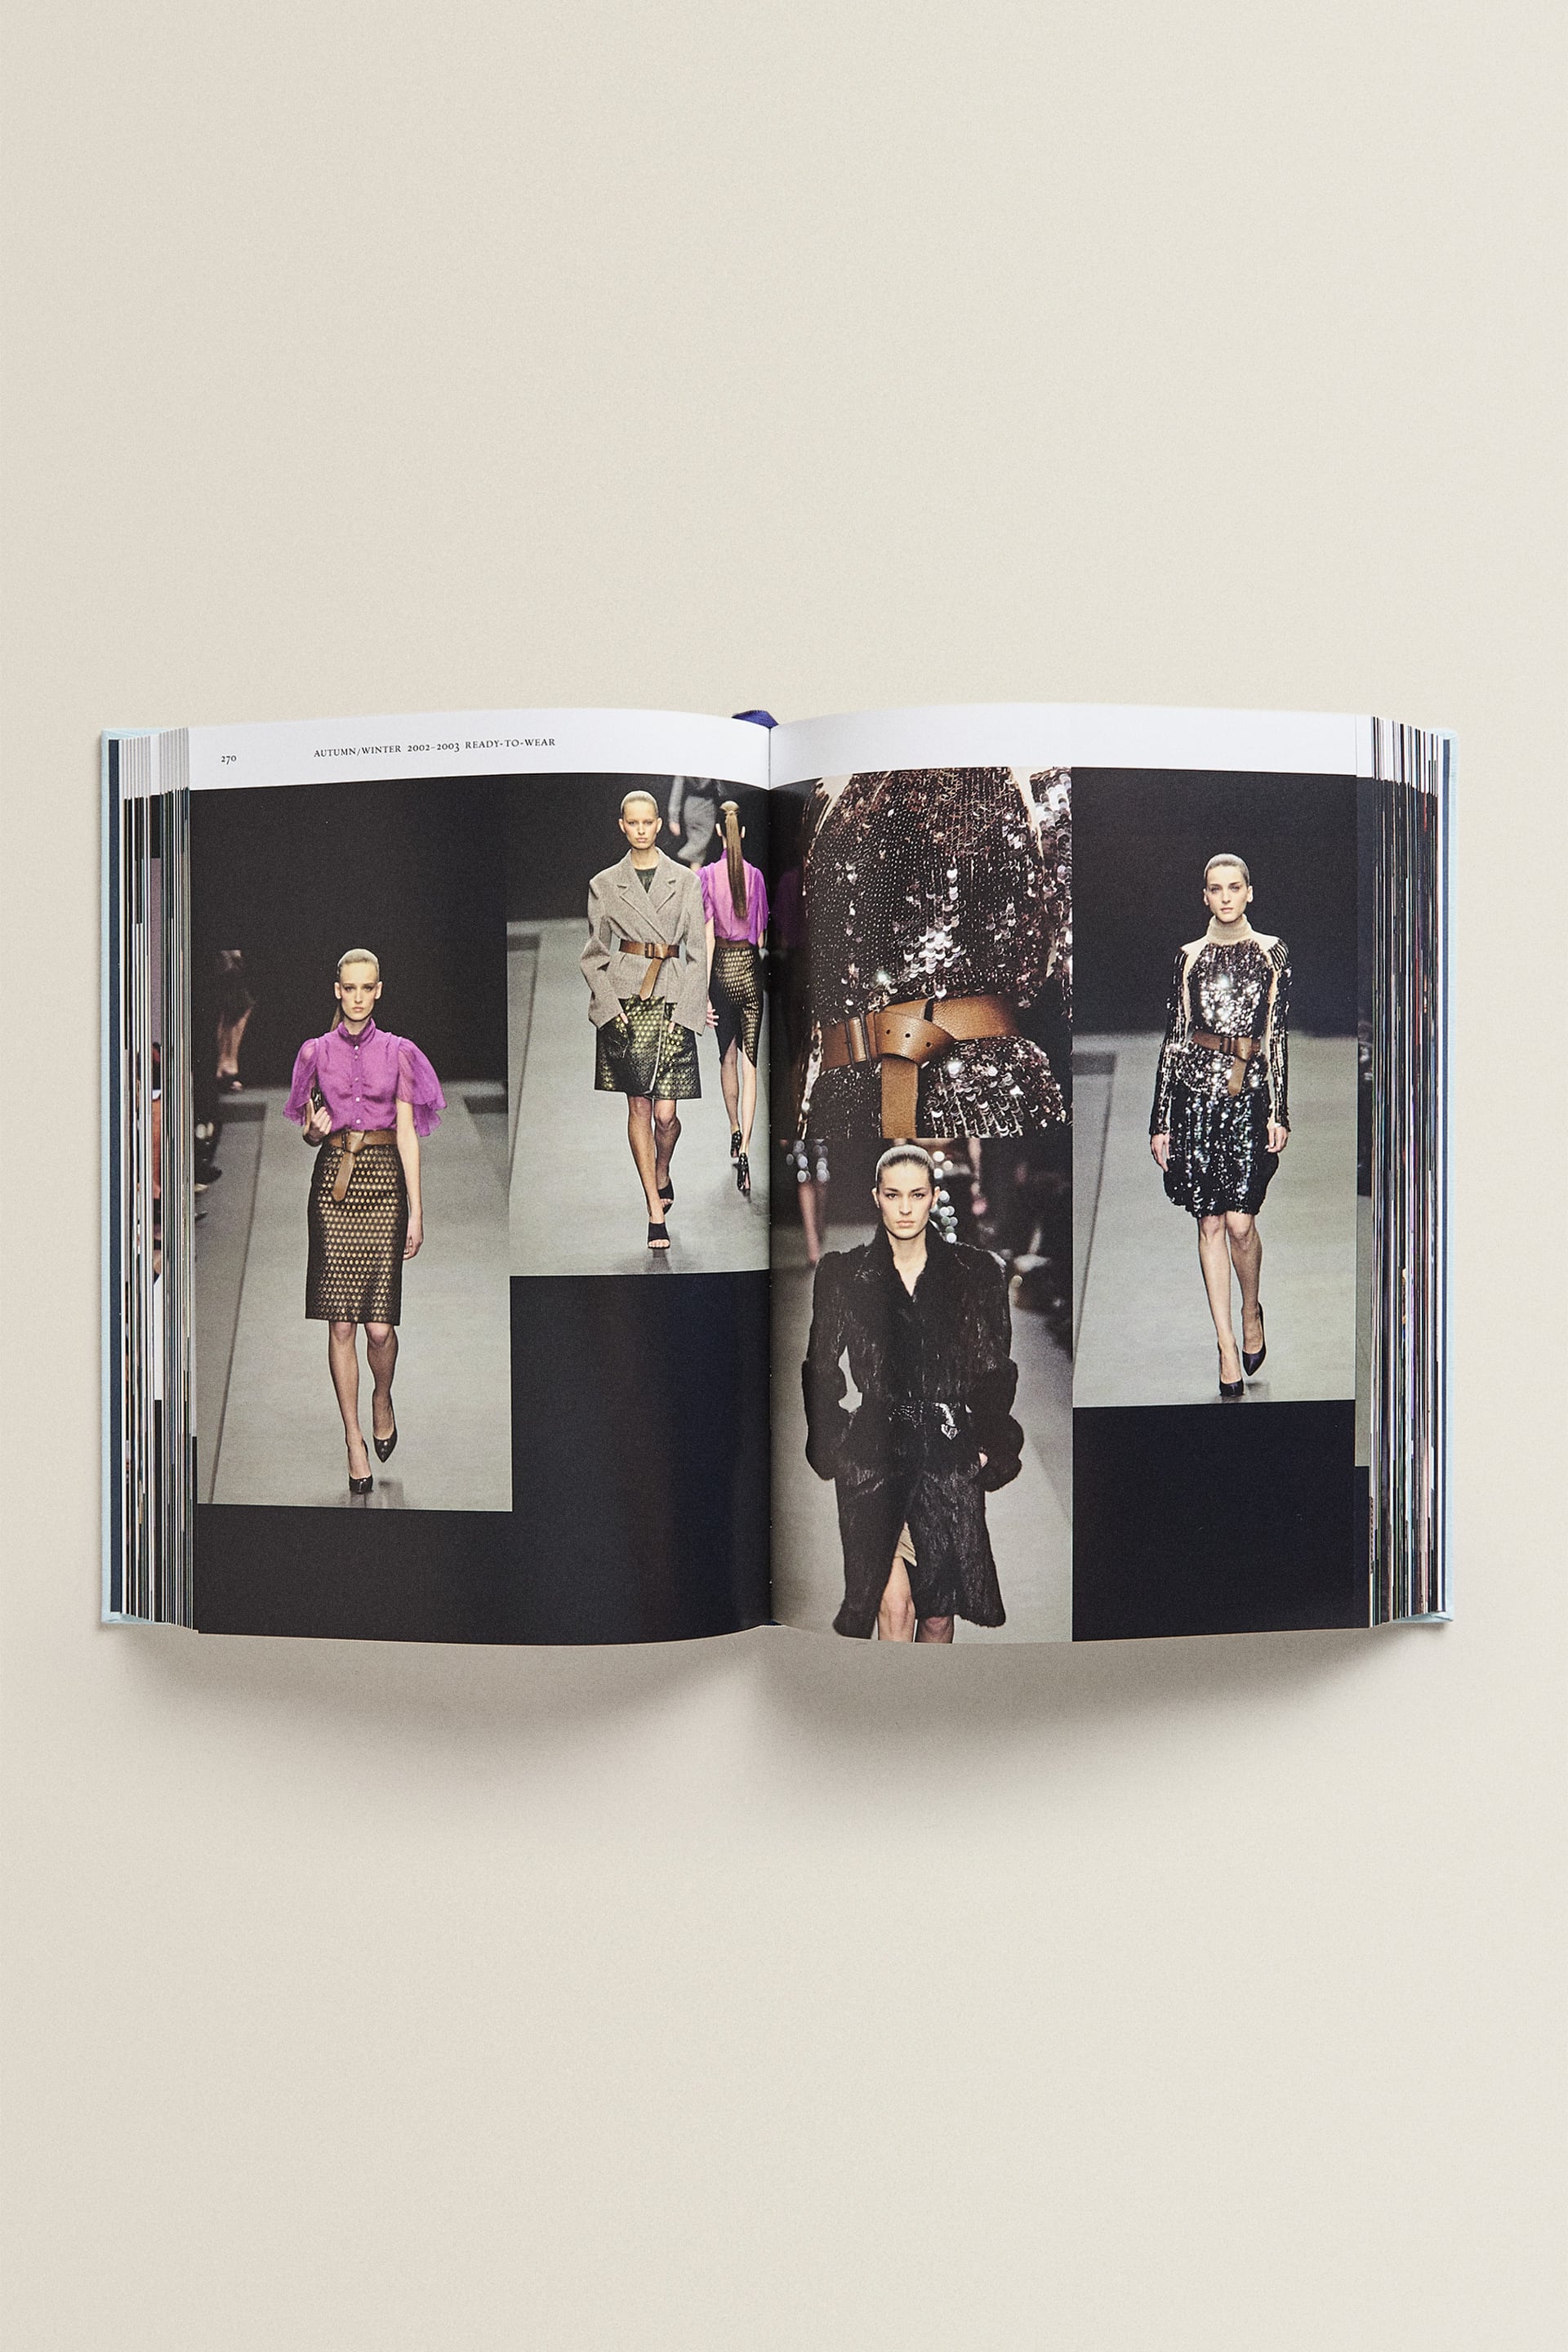 Prada Catwalk Book - New Mags @ RoyalDesign